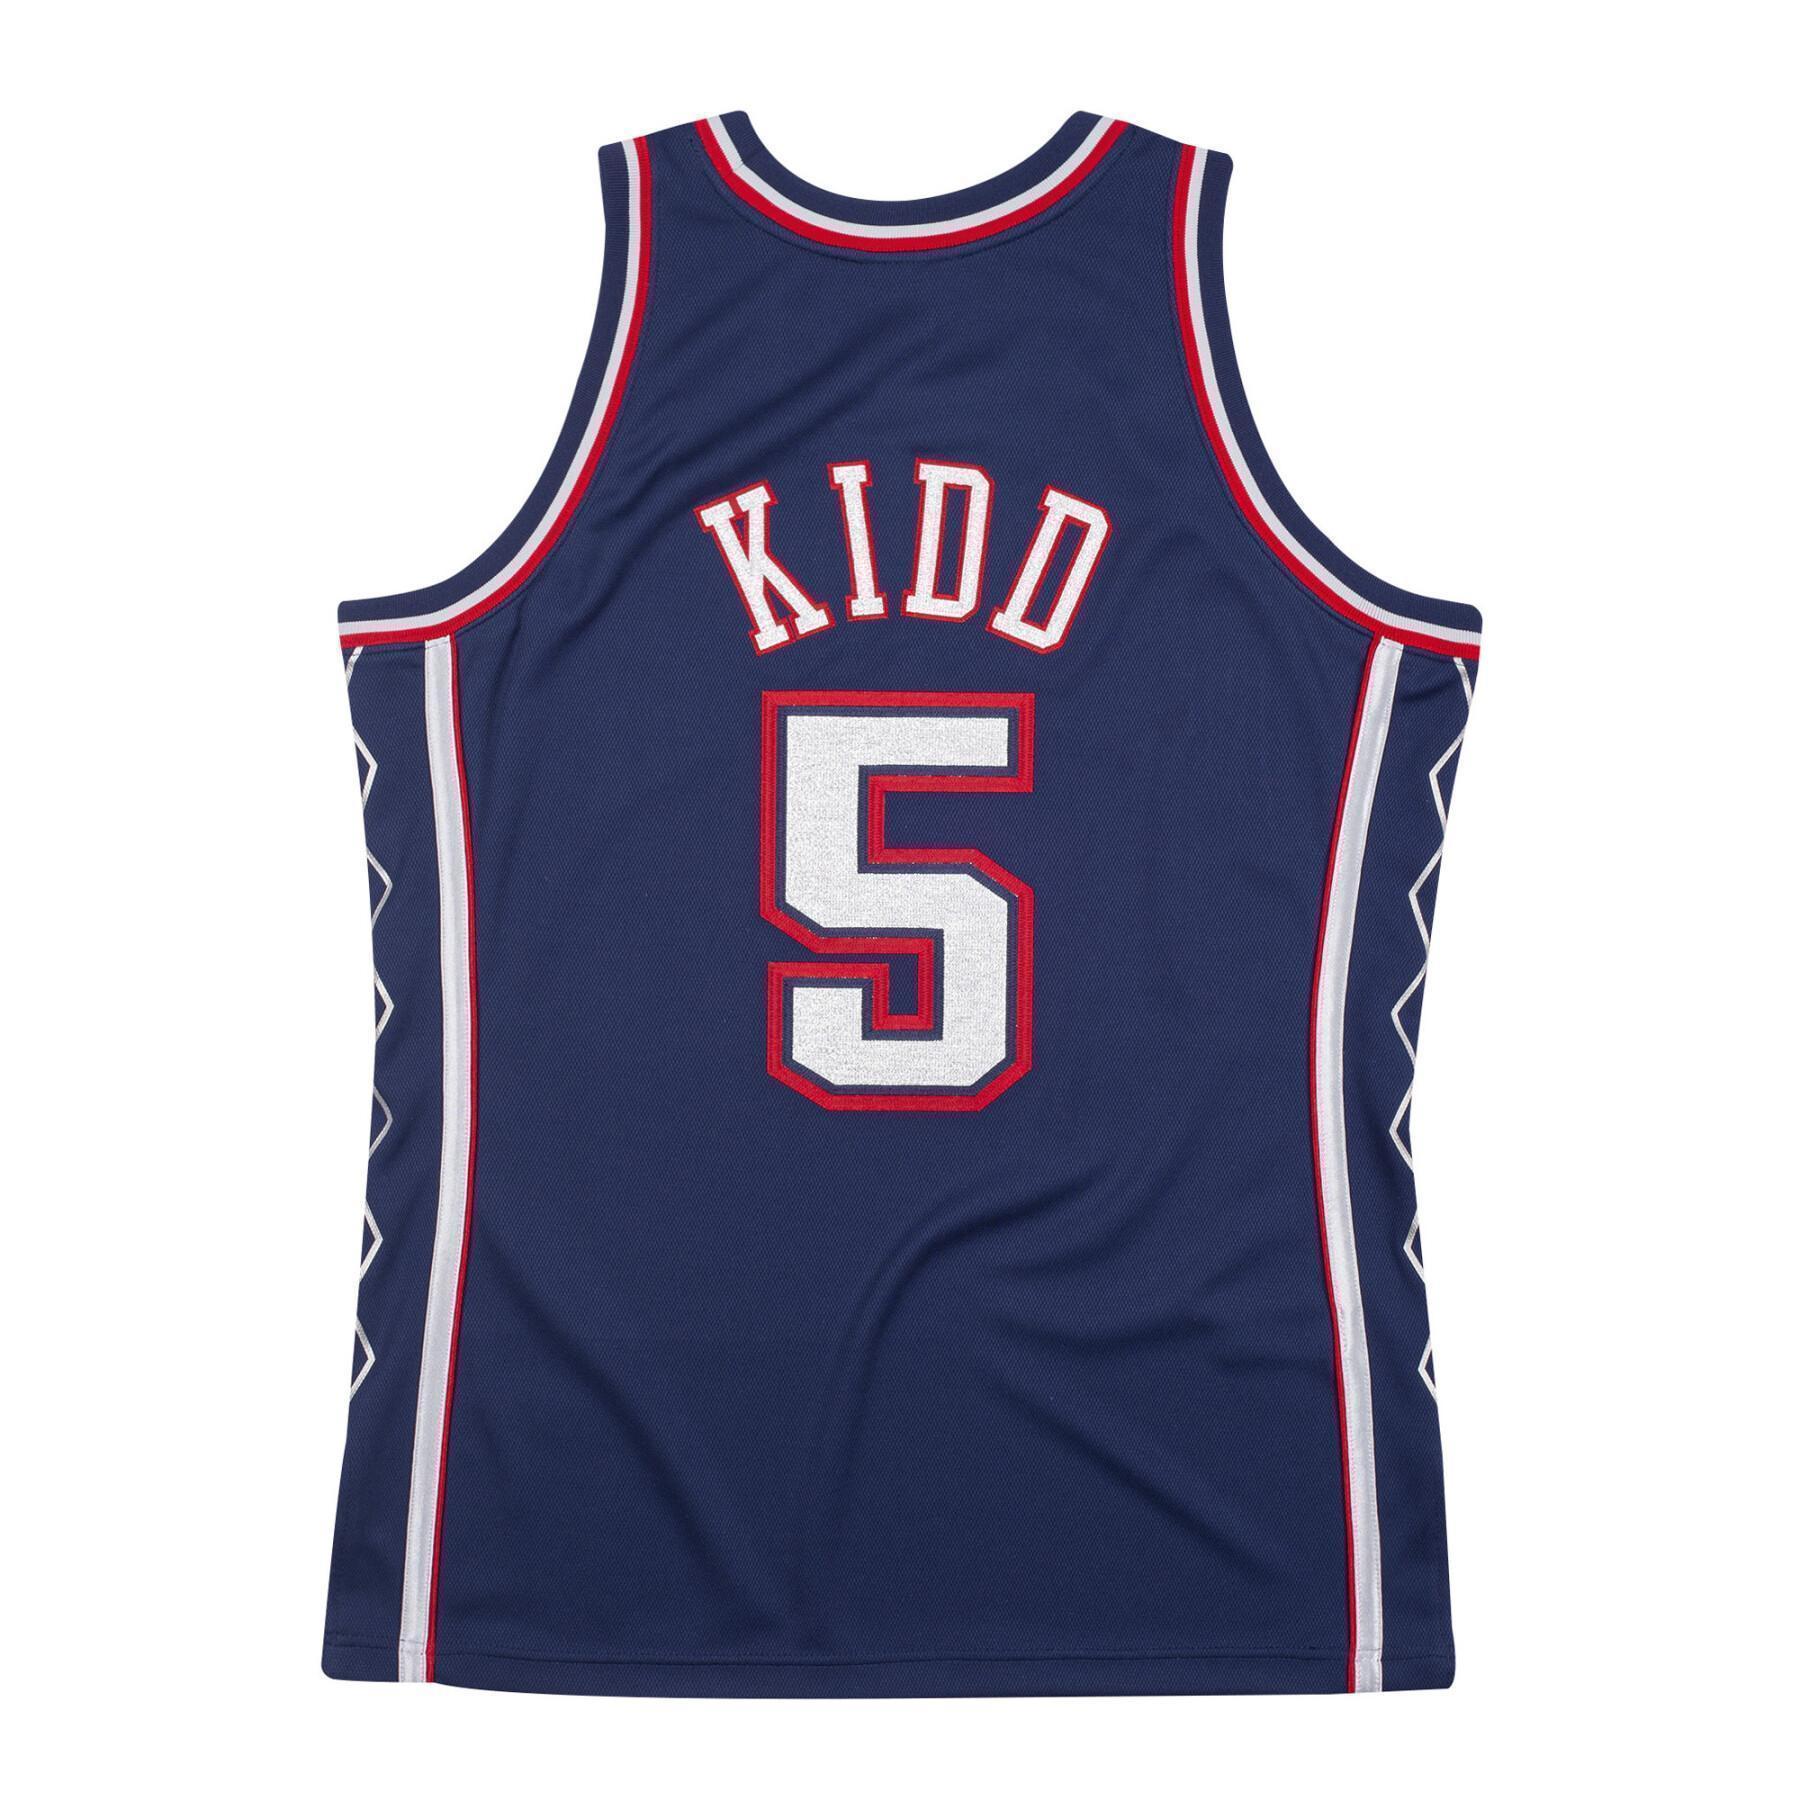 Authentic jersey New Jersey Nets Jason Kidd